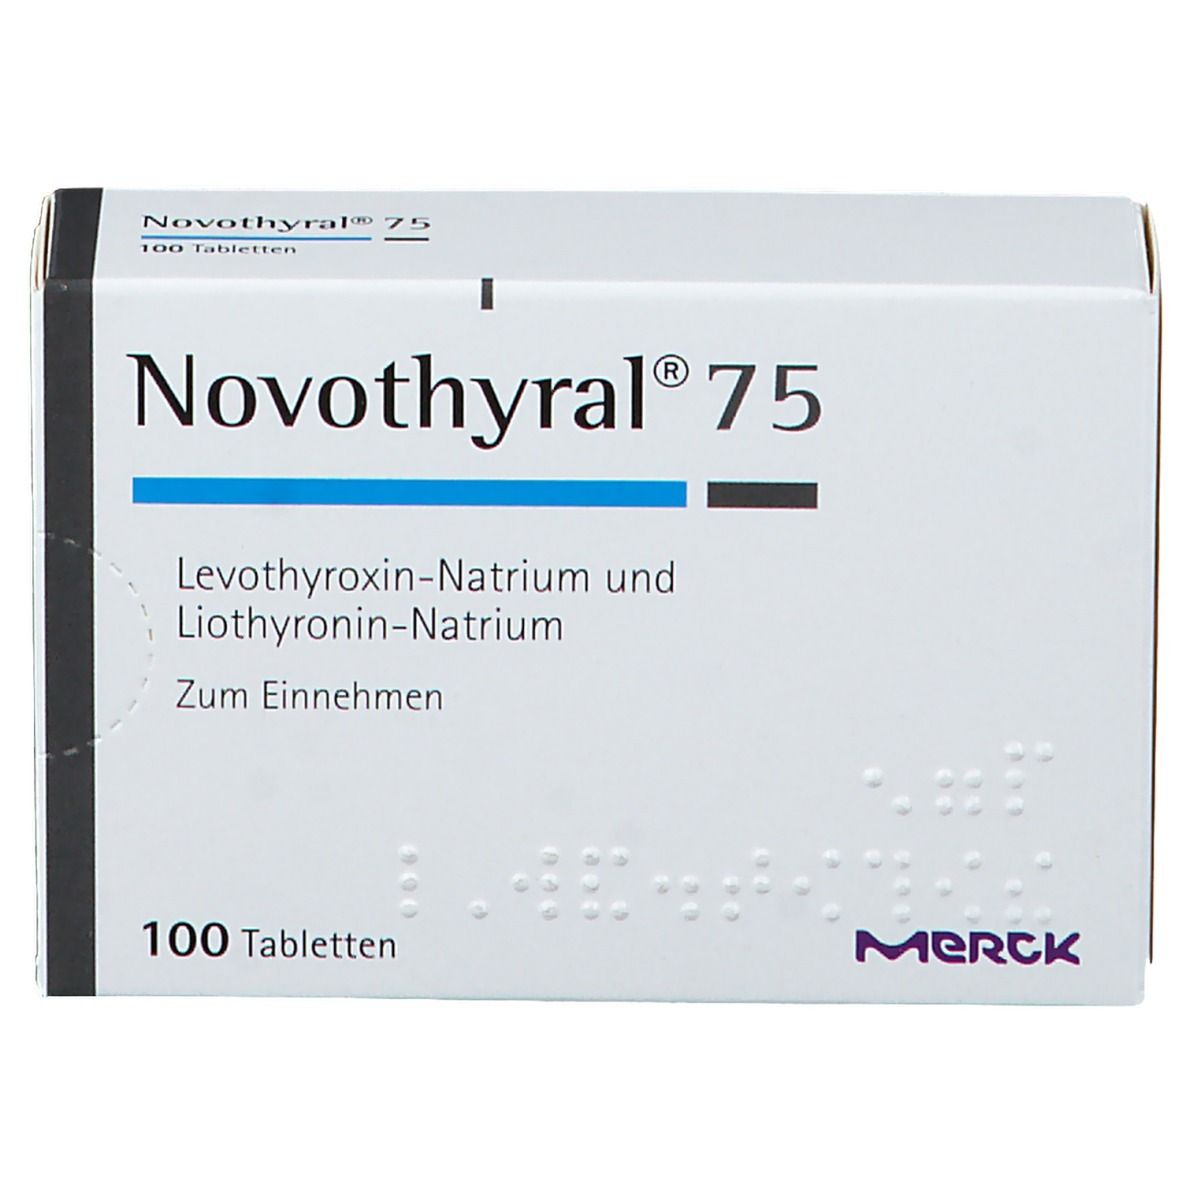 Novothyral® 75